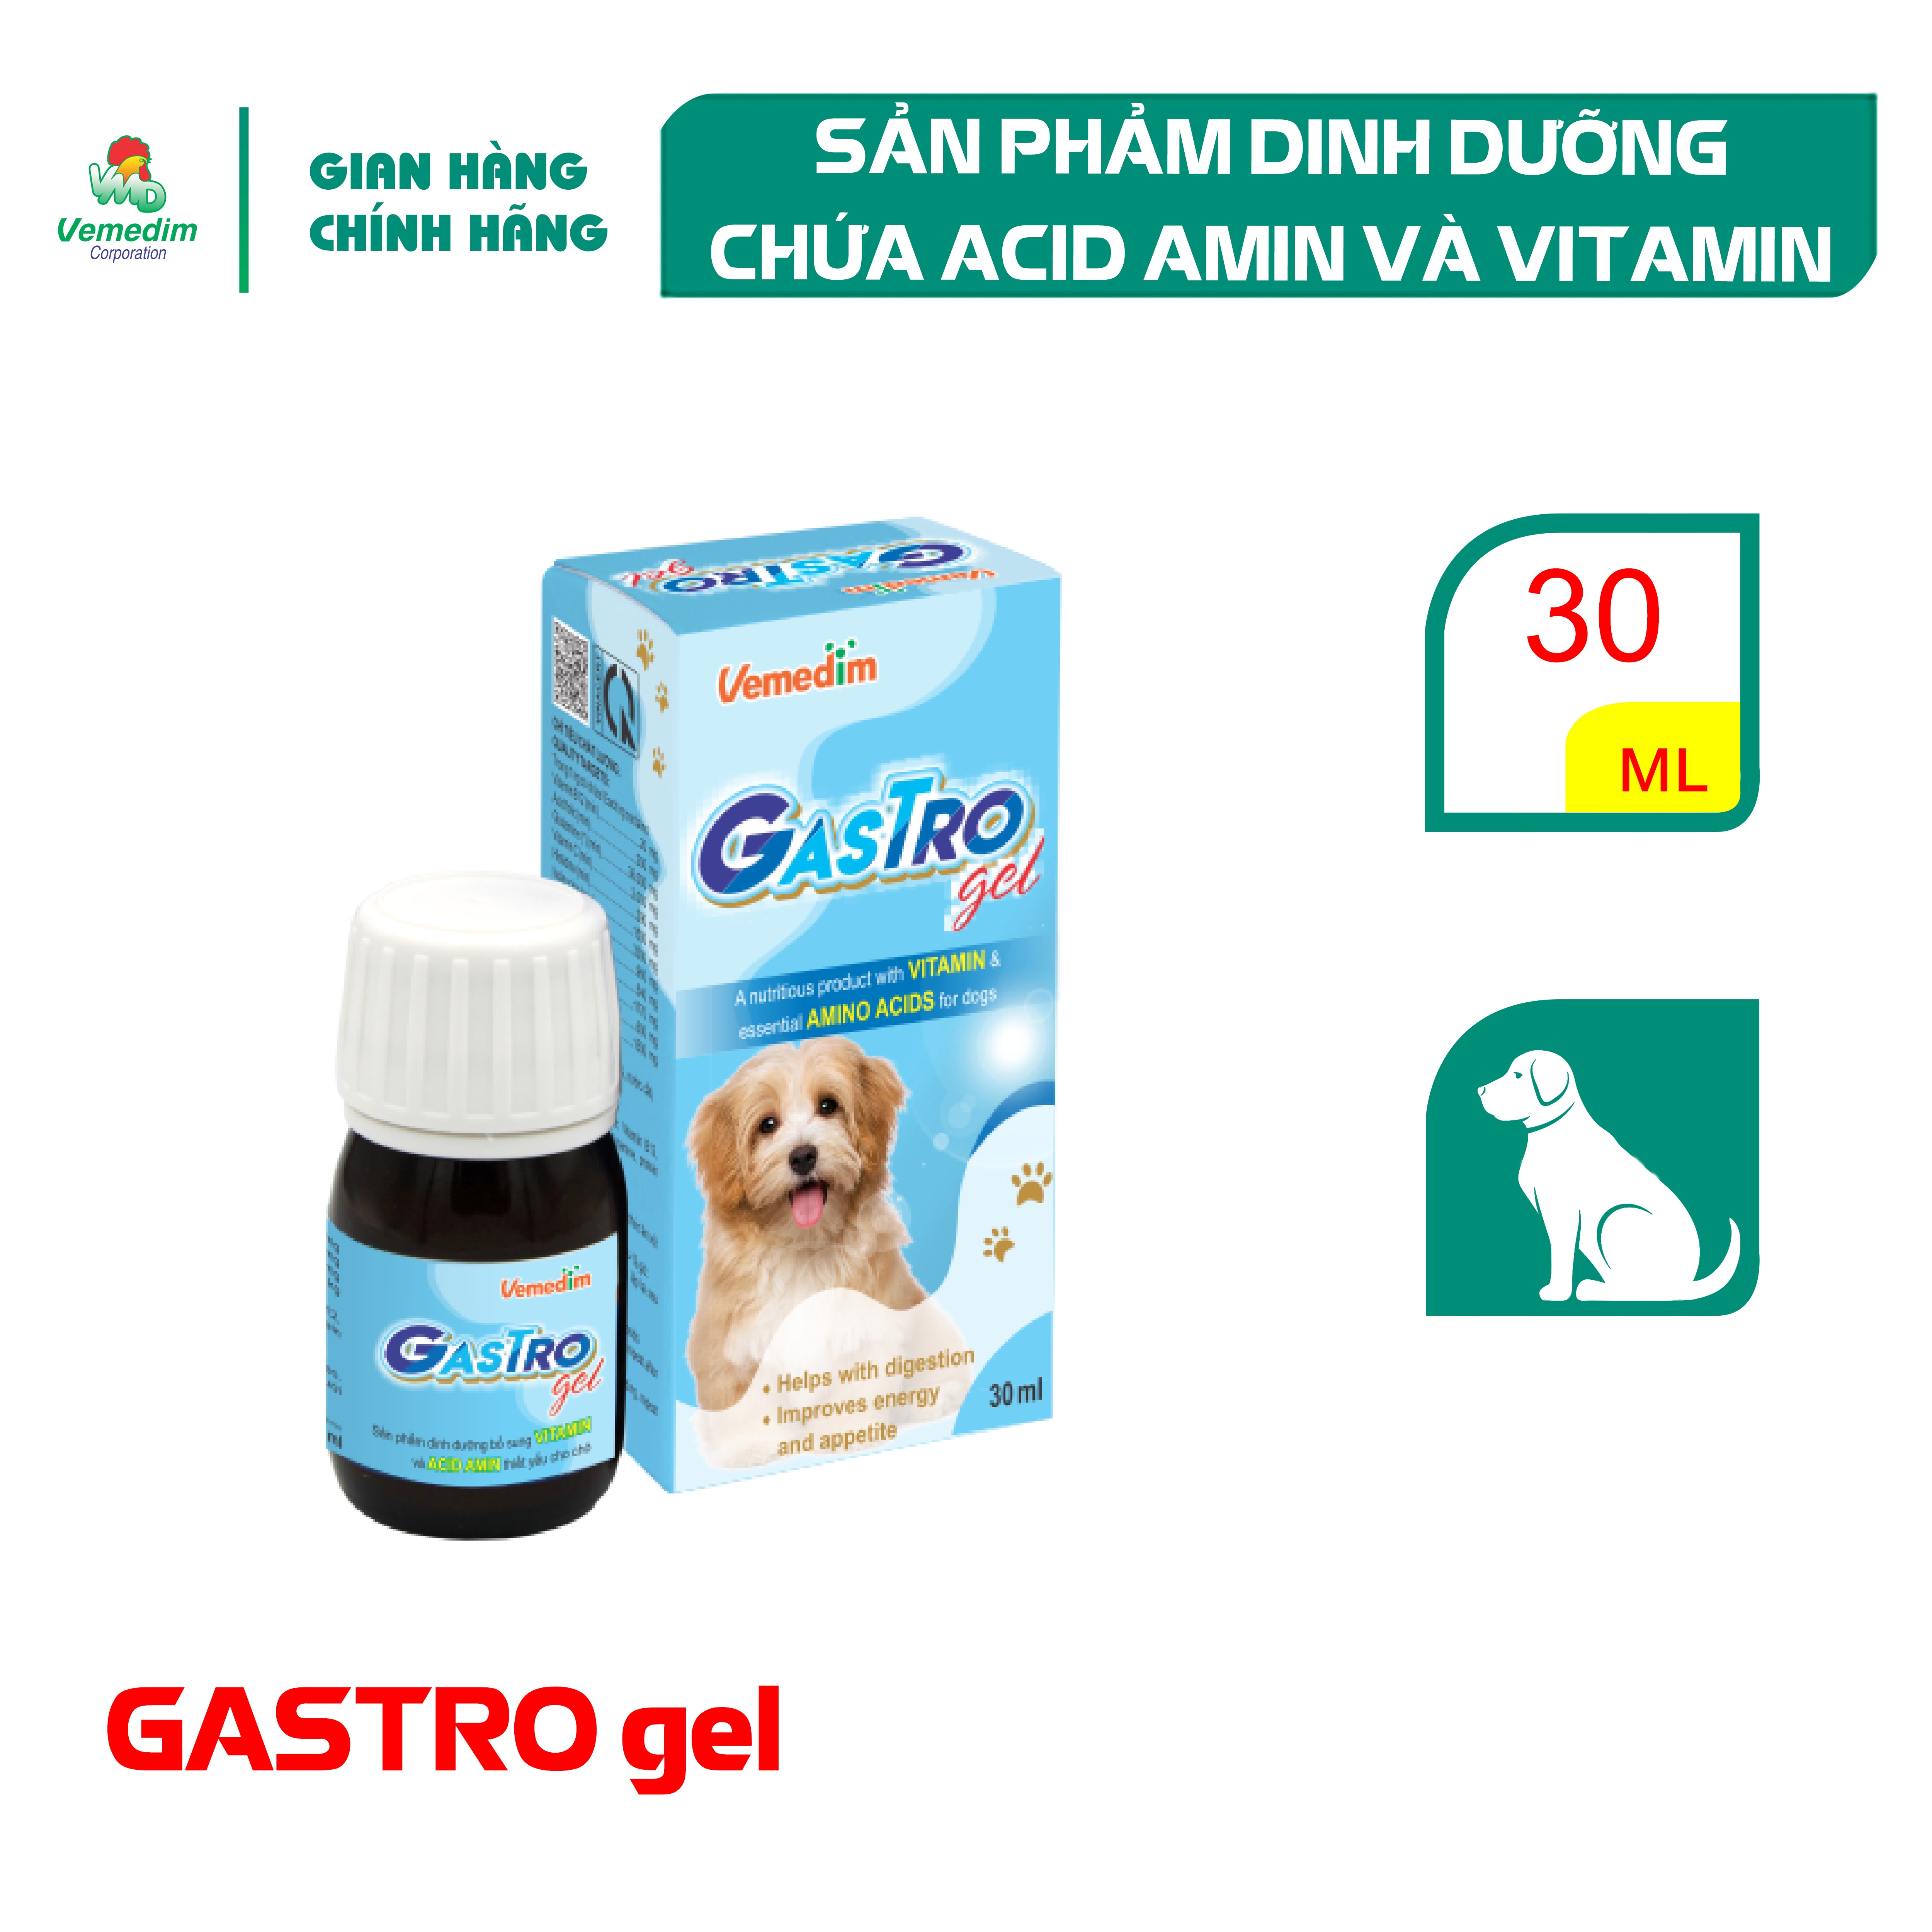 "Hoàn tiền đến 10%" Vemedim Gastro gel chứa vitamin và acid amin thiết yếu giúp chó thèm ăn tiêu hóa tốt chai 30ml